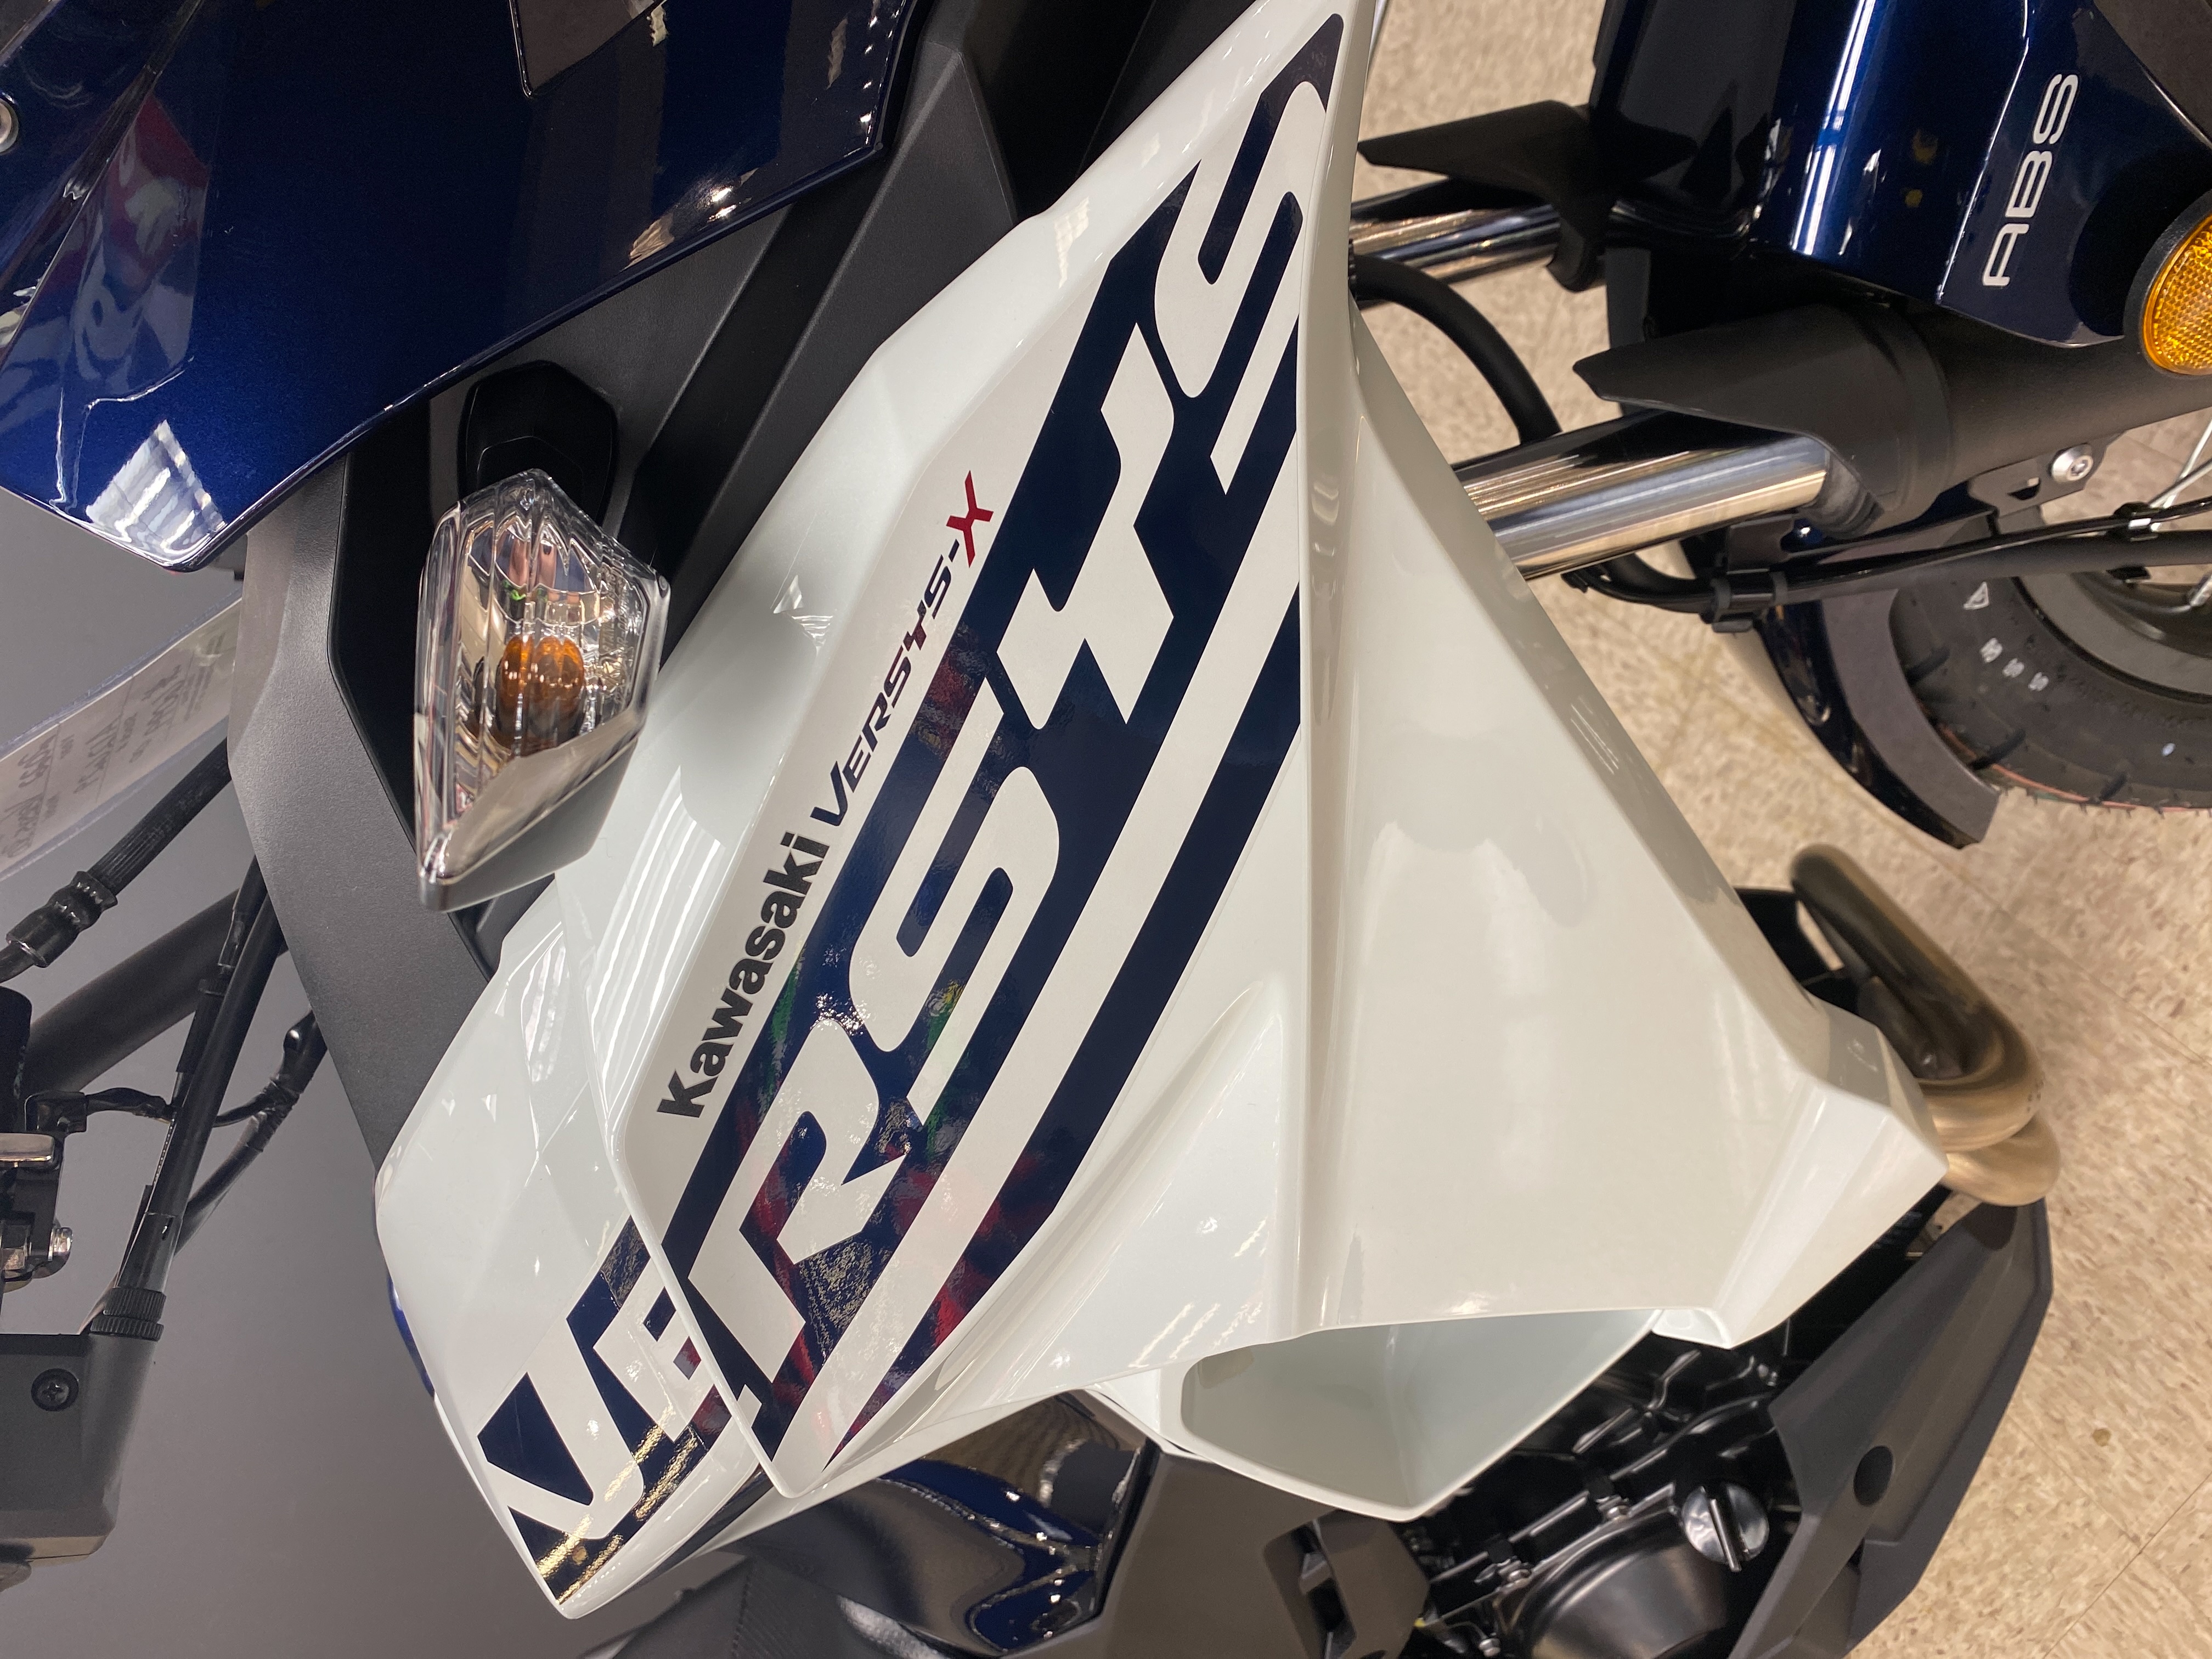 2022 Kawasaki Versys-X 300 ABS at Sloans Motorcycle ATV, Murfreesboro, TN, 37129